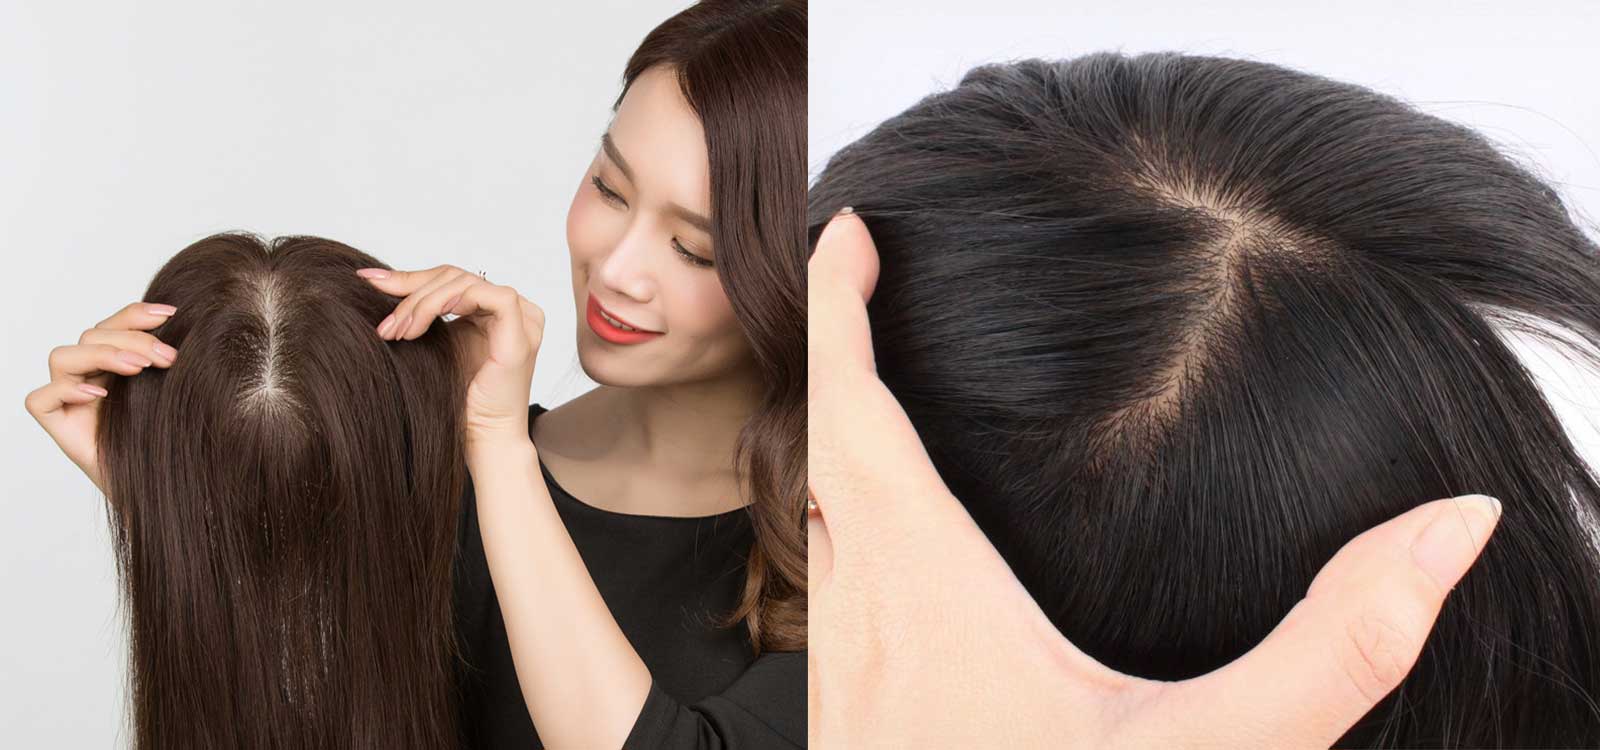 Hướng dẫn cách đội tóc giả siêu da đầu đơn giản tại nhà 